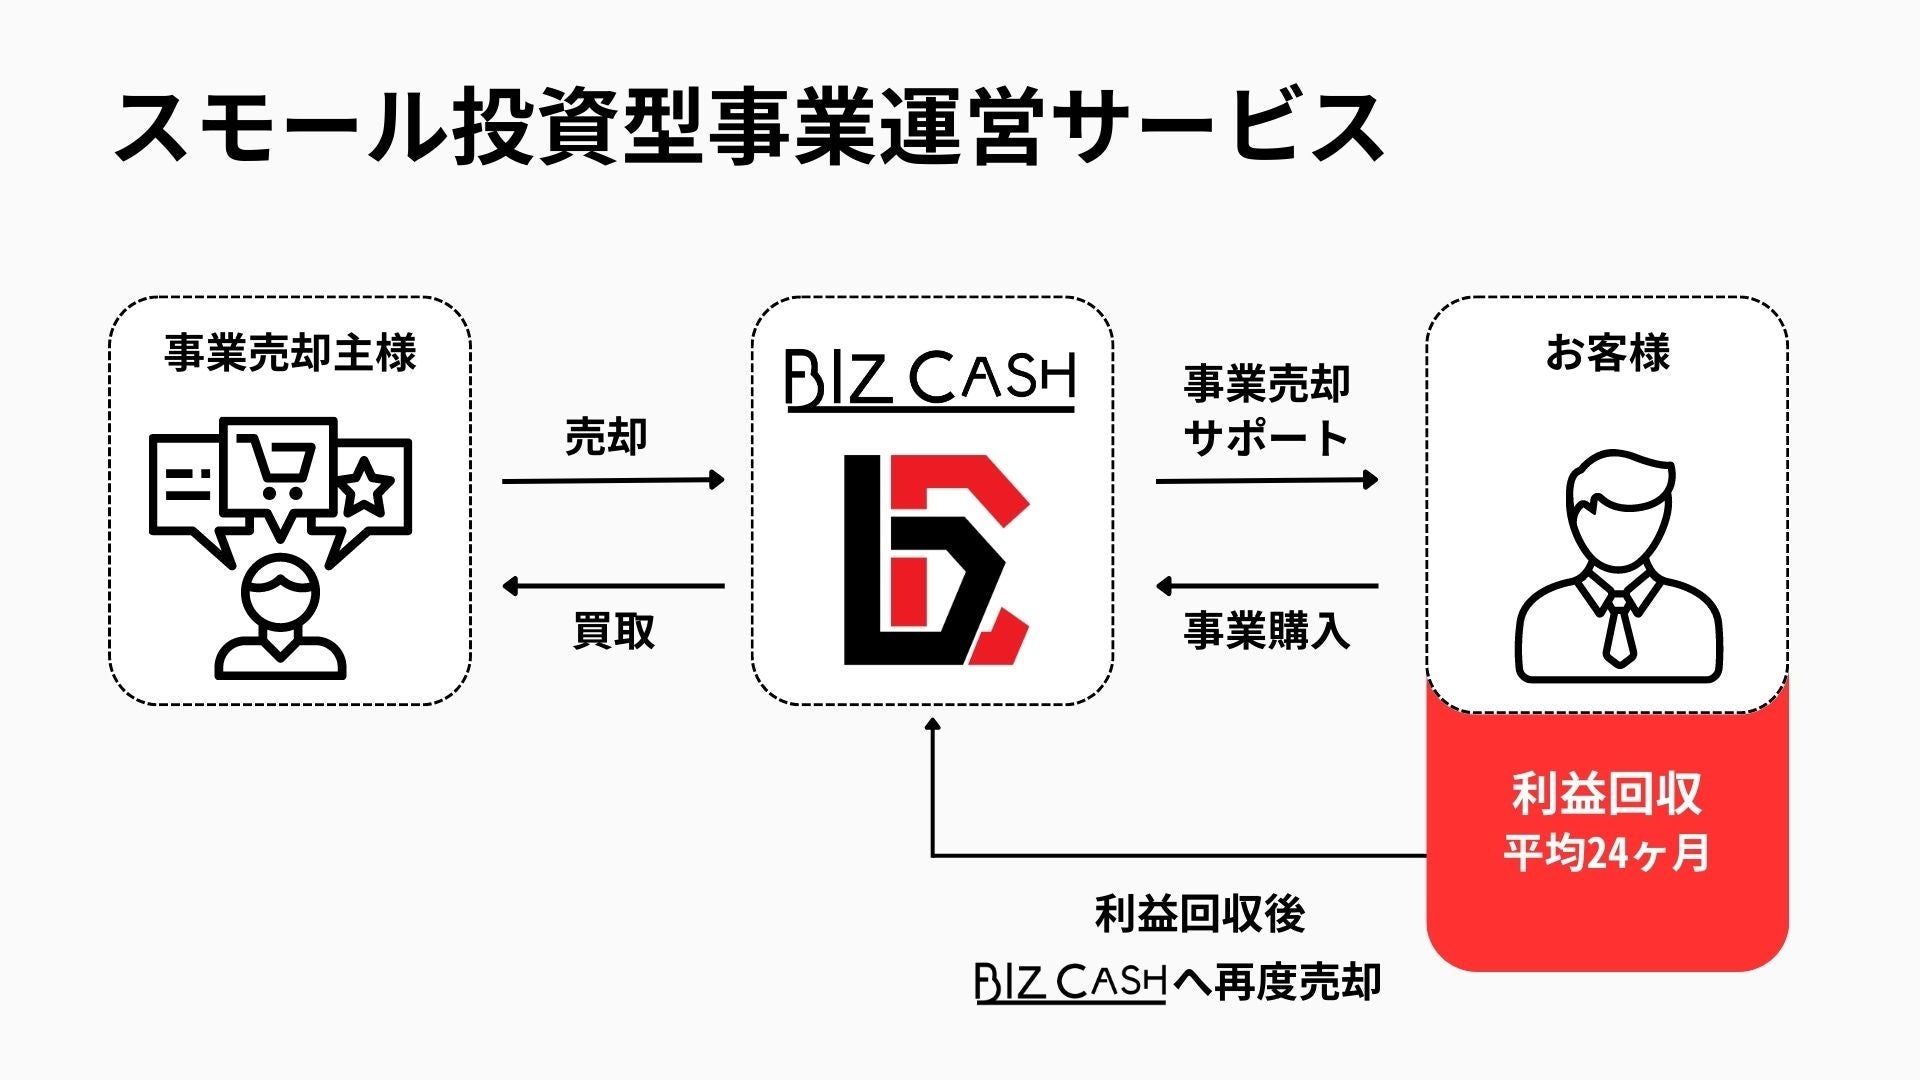 事業買取専門店の「BIZCASH」投資メインでの事業売却サービスをスタートしました